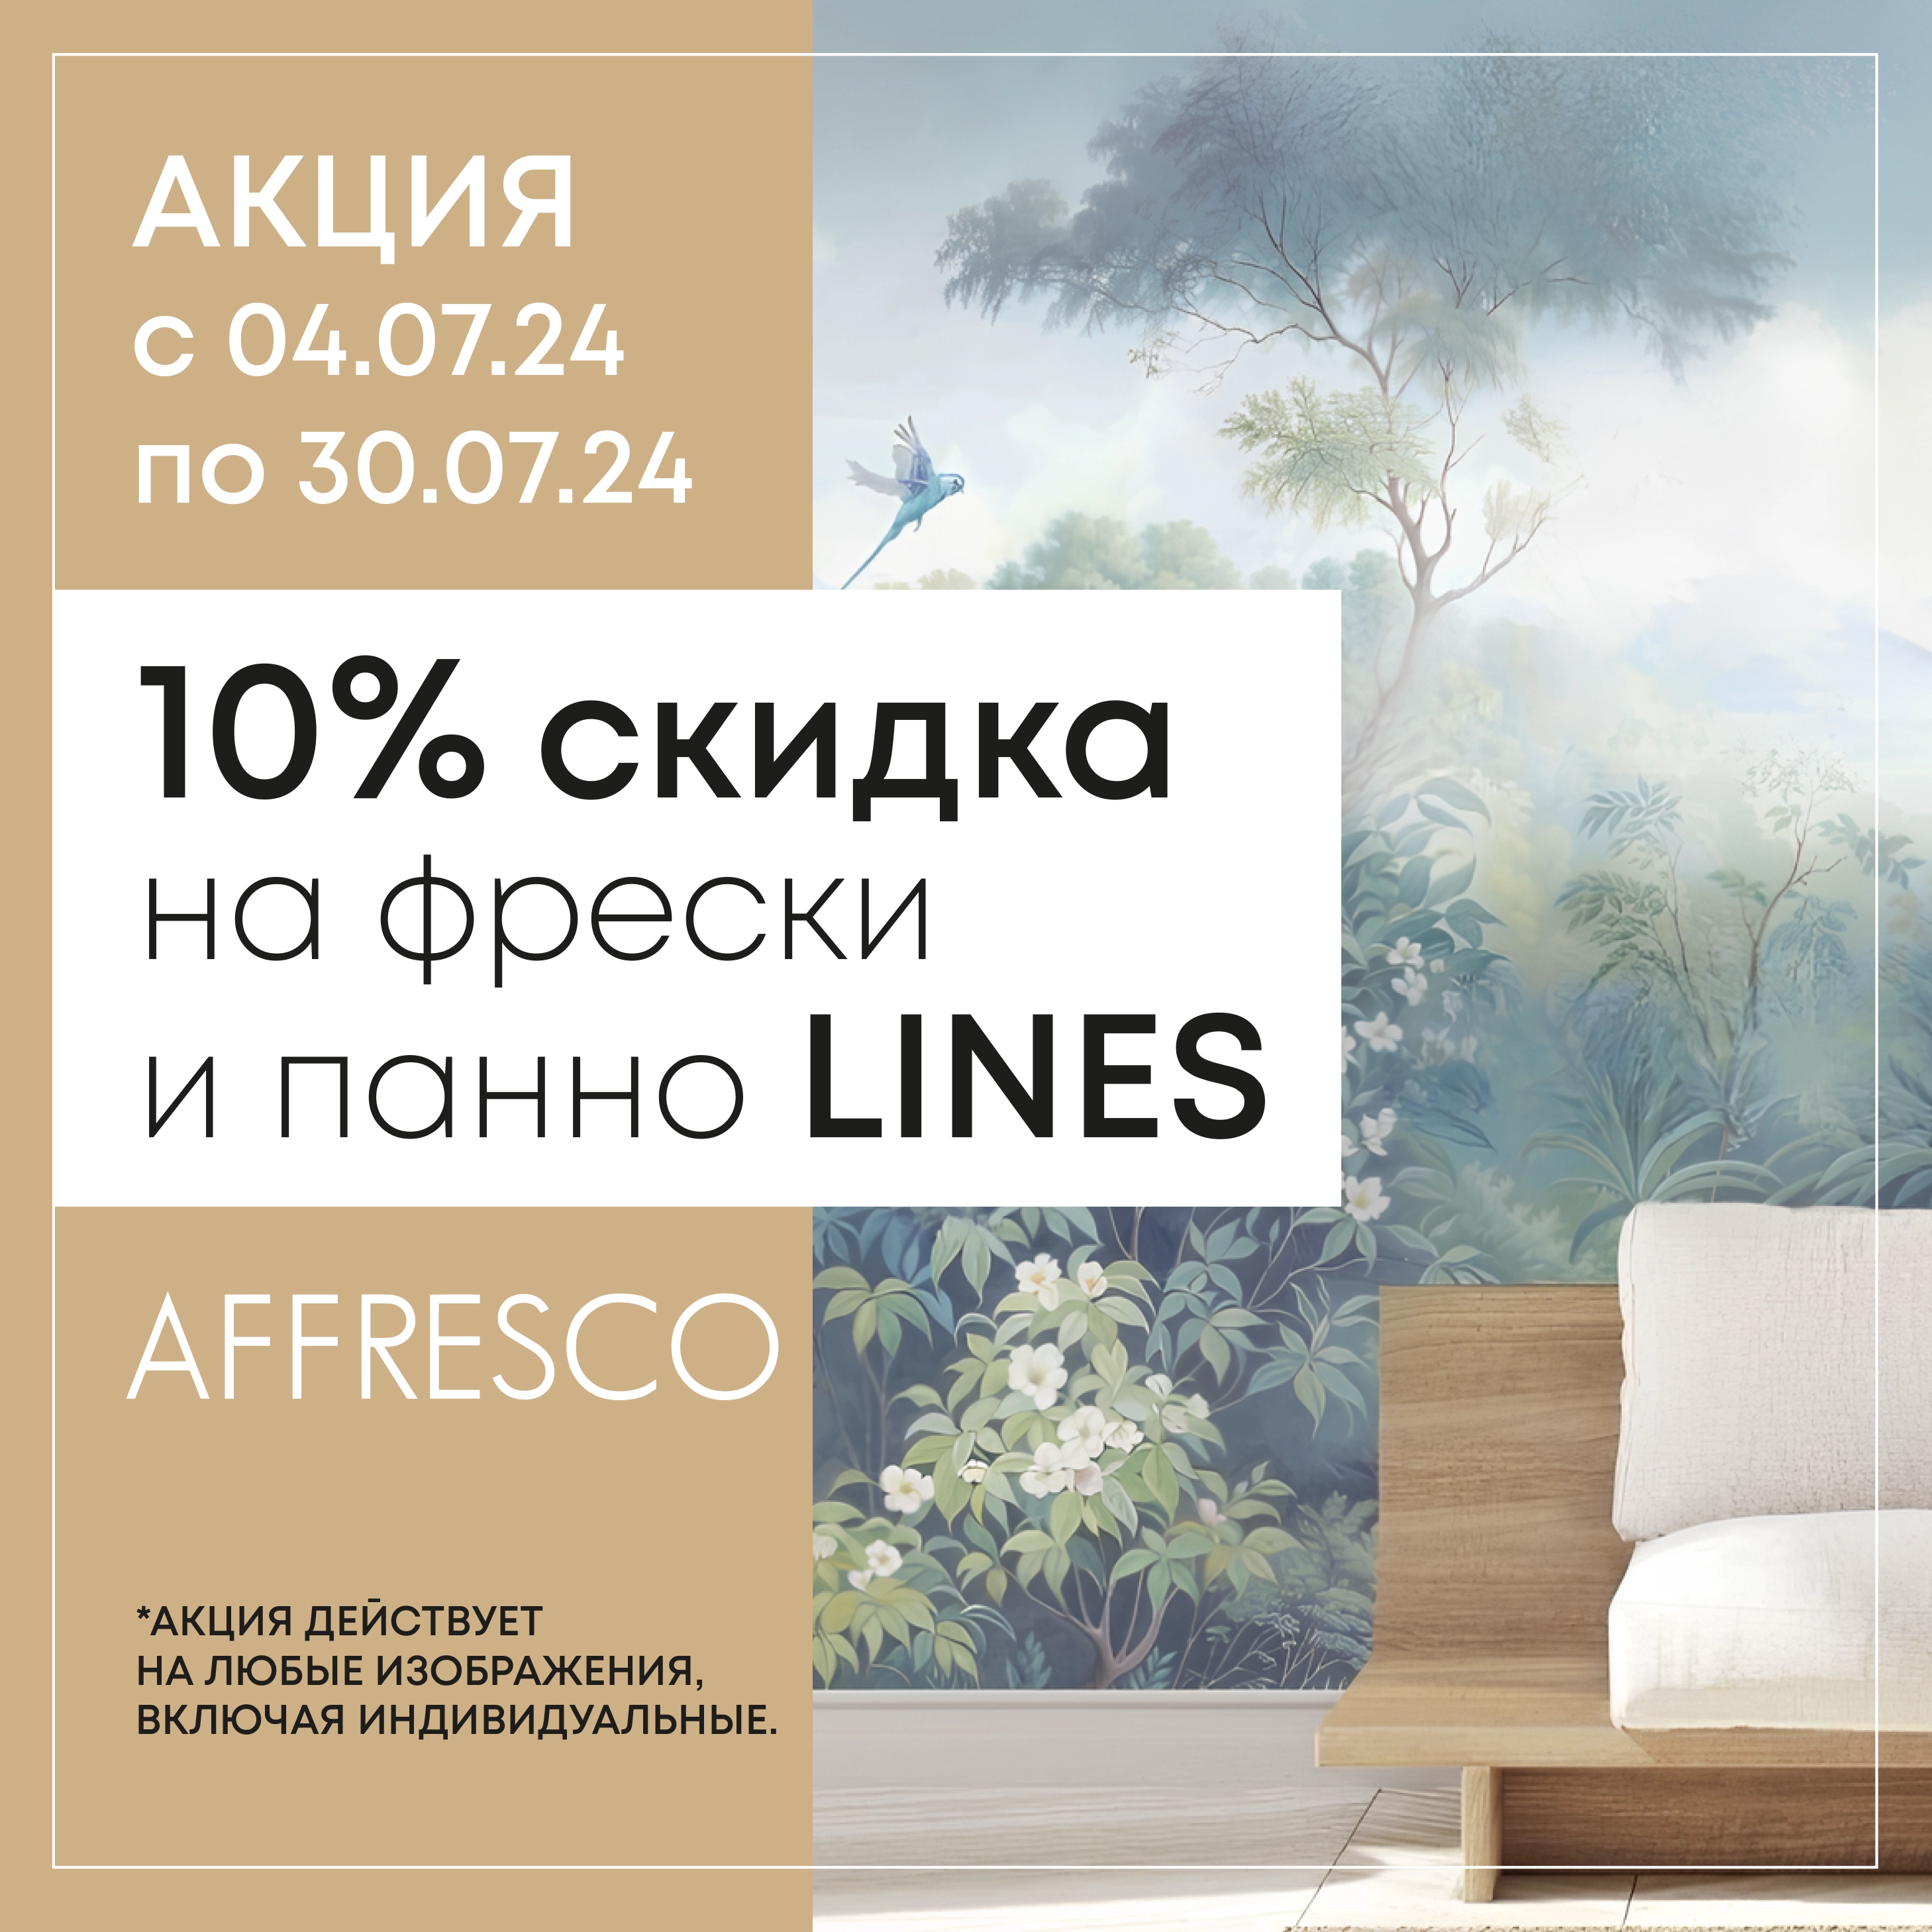 АКЦИЯ: скидка 10% на фрески и панно LINES!